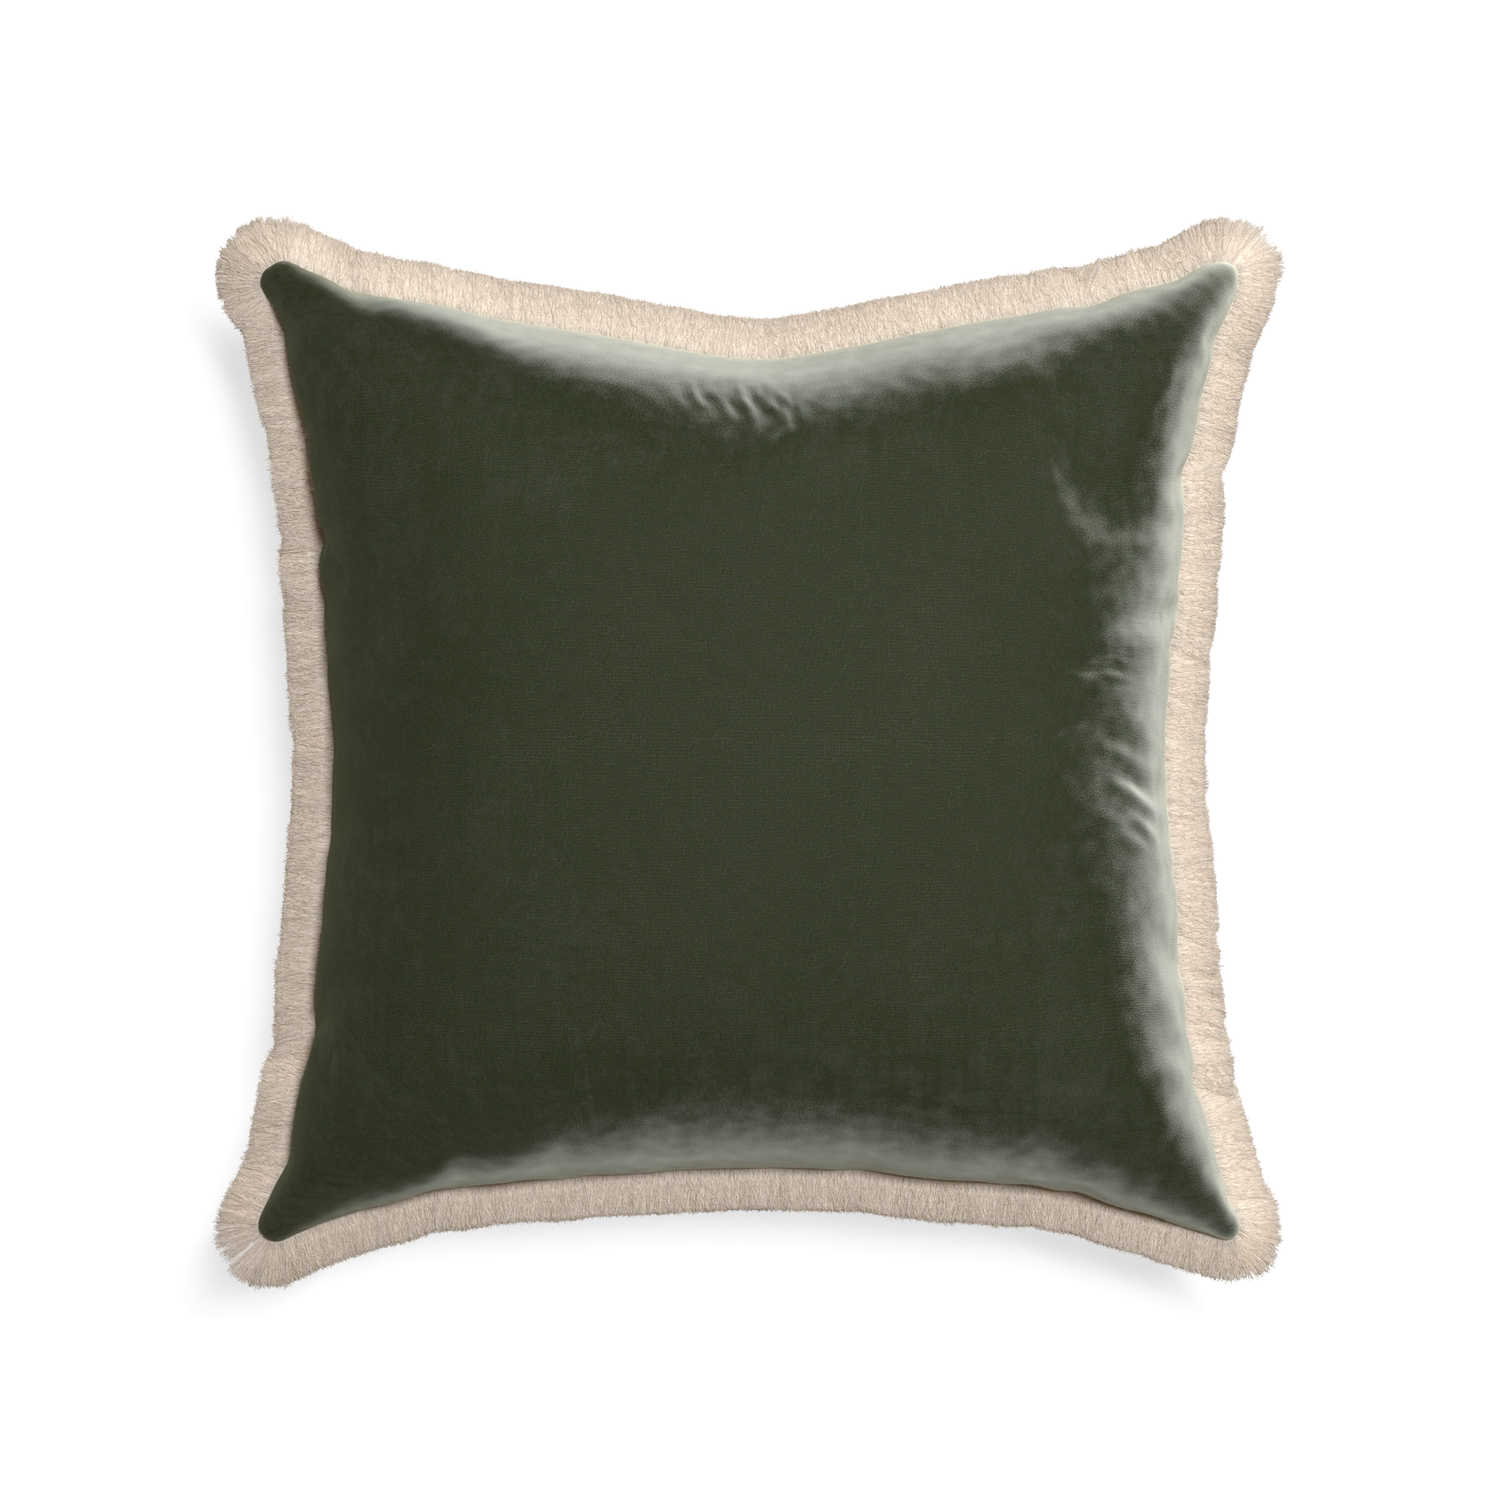 square fern green velvet pillow with cream fringe